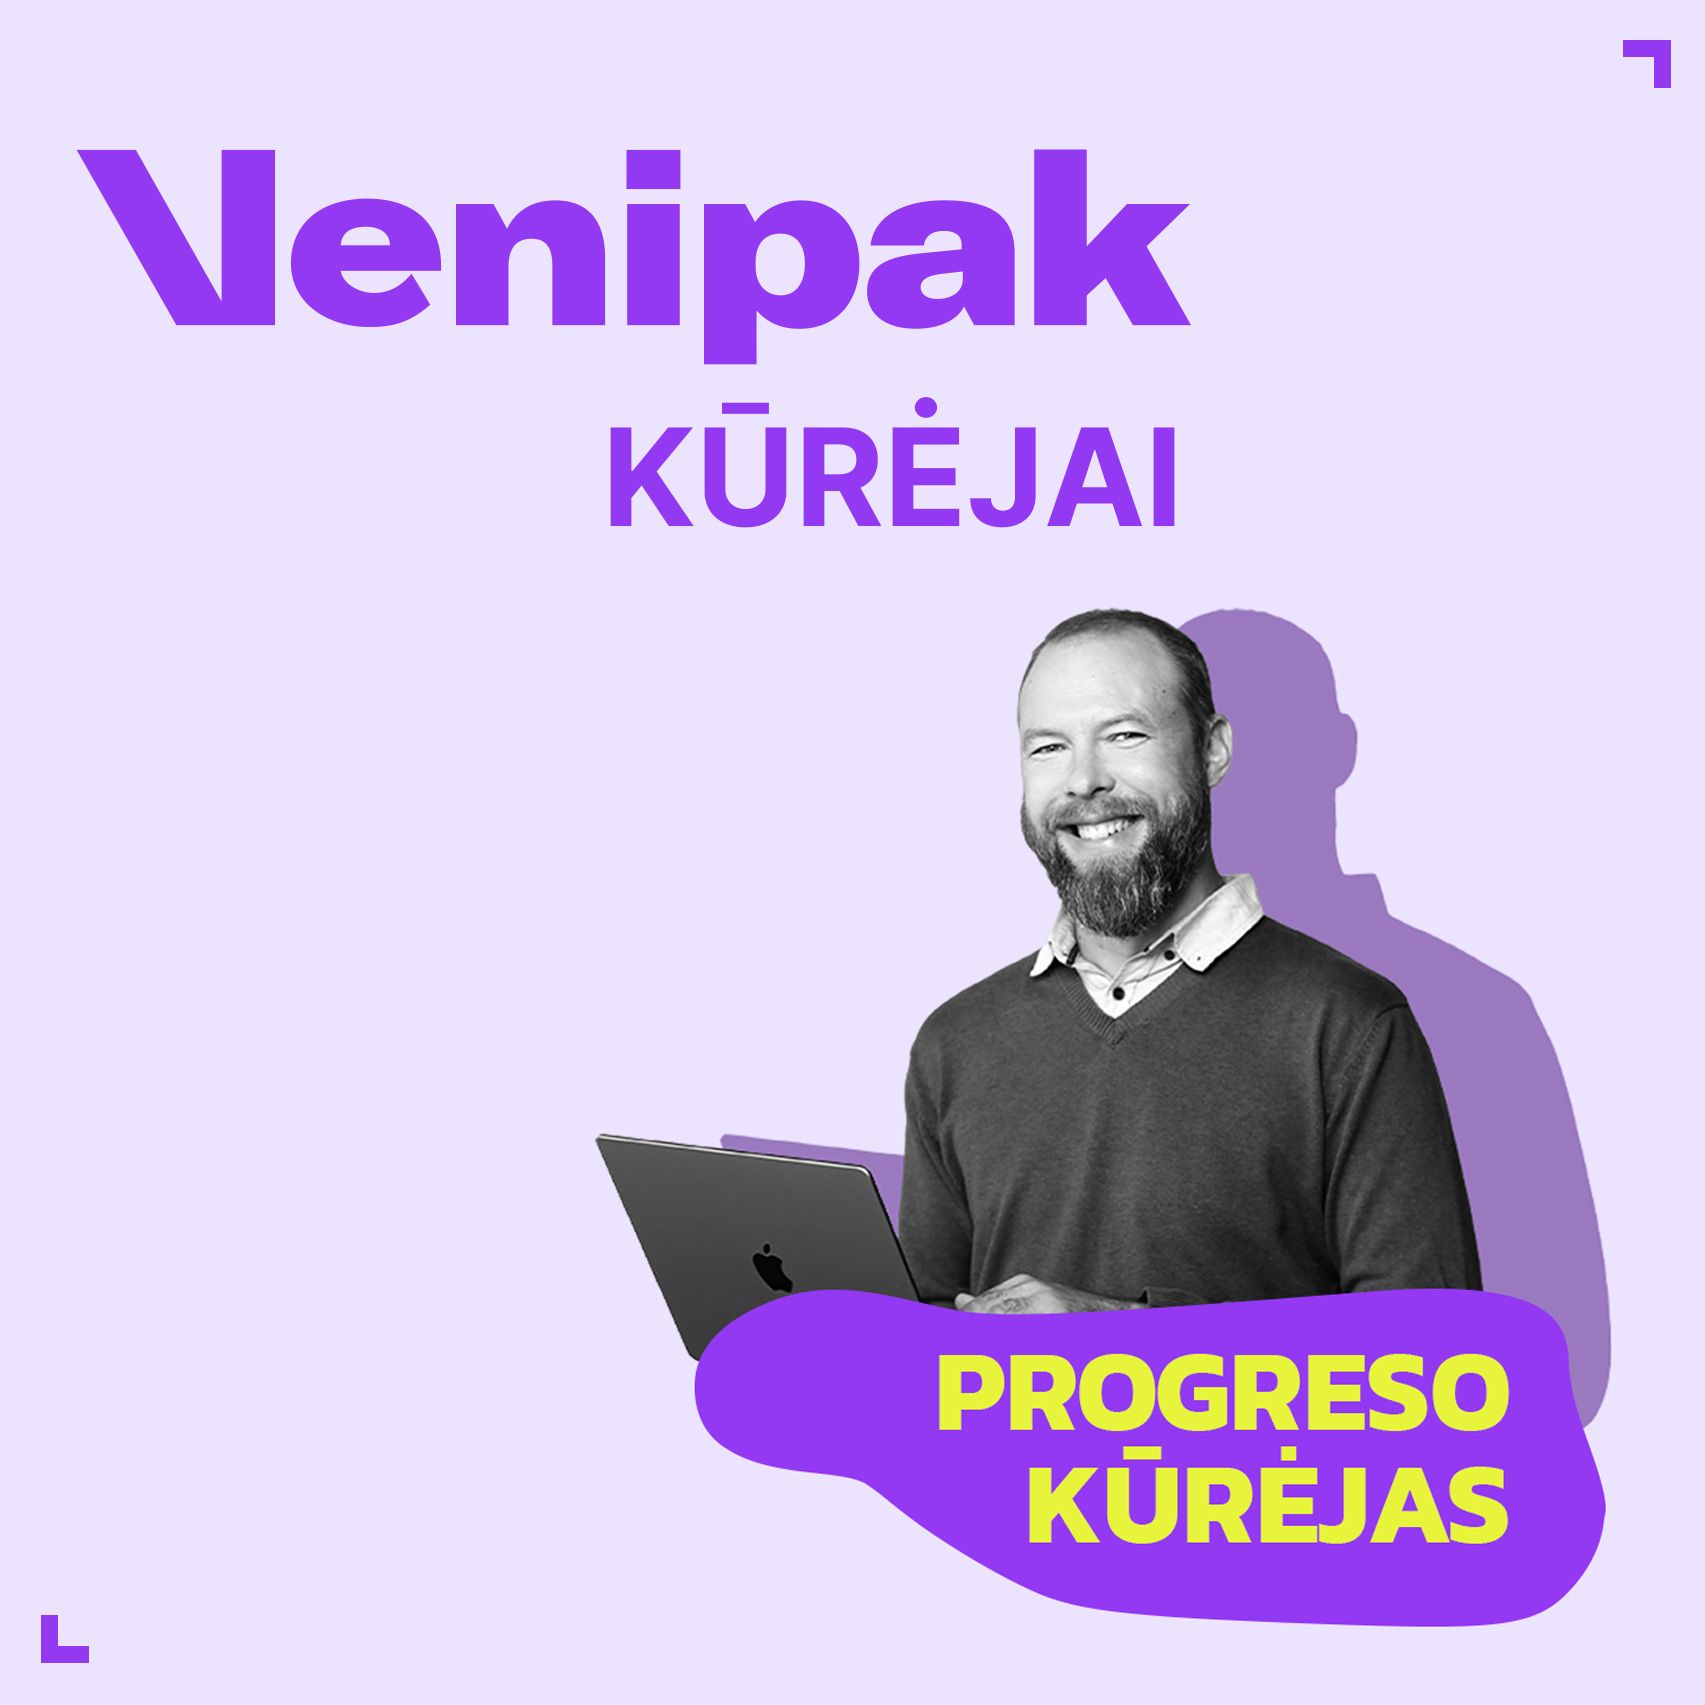 Berta-And-Agency_clients-klientai_venipak-creators-venipak-kurejai